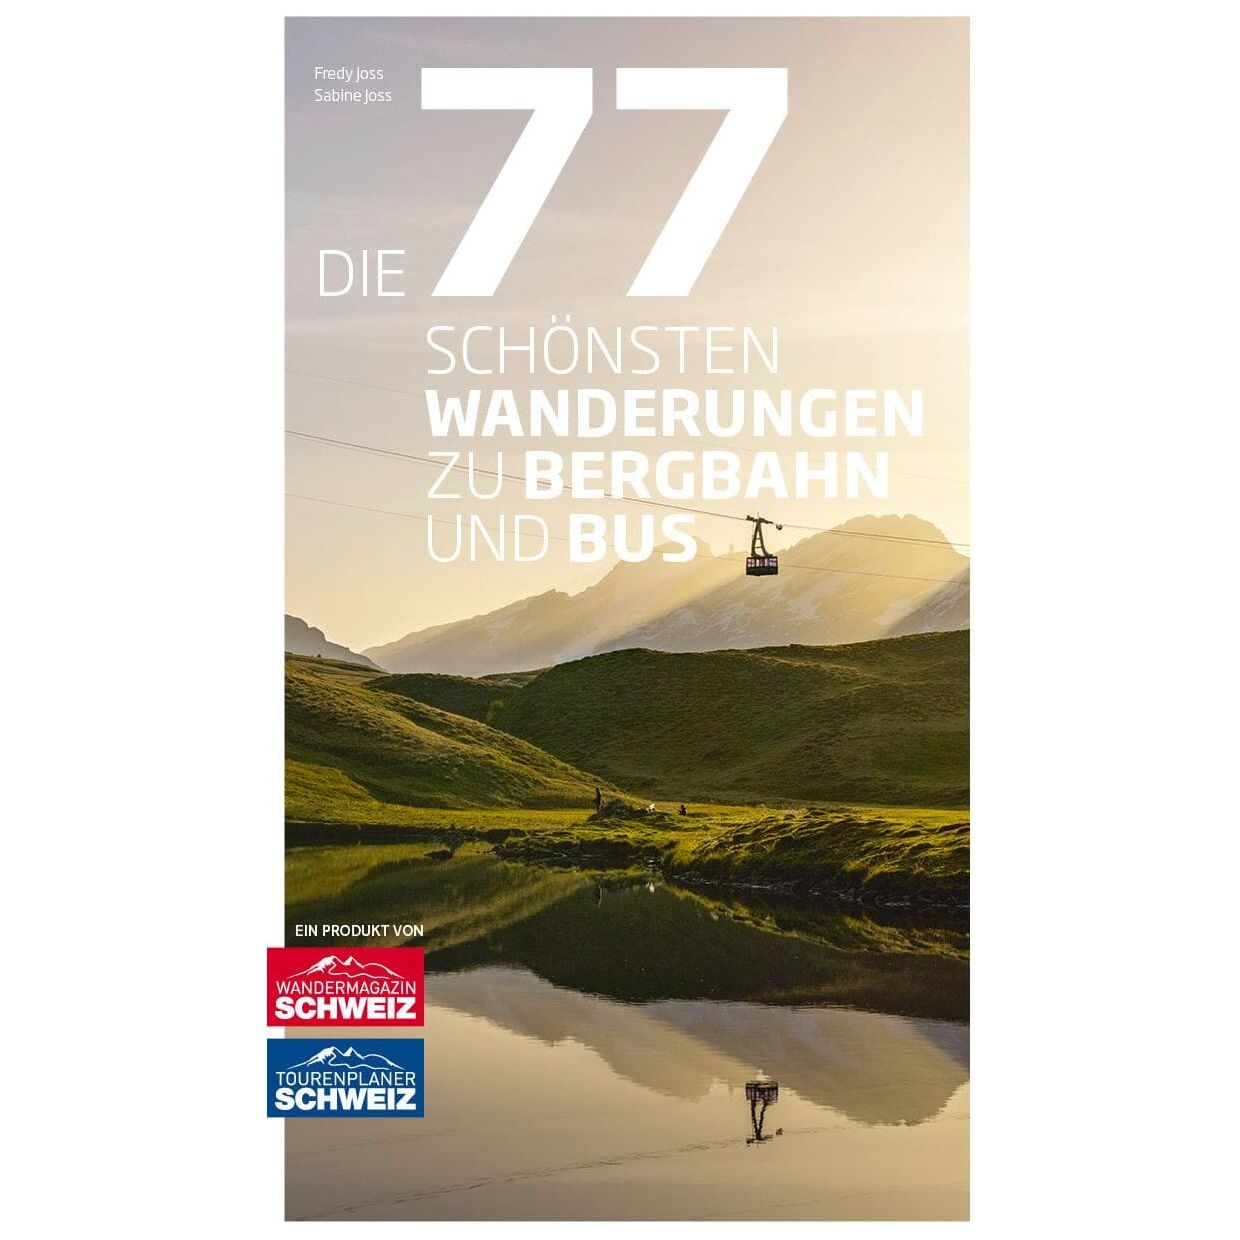 Die 77 Wanderungen zu Bergbahn und Bus Gedruckte Bücher Wandershop Schweiz 